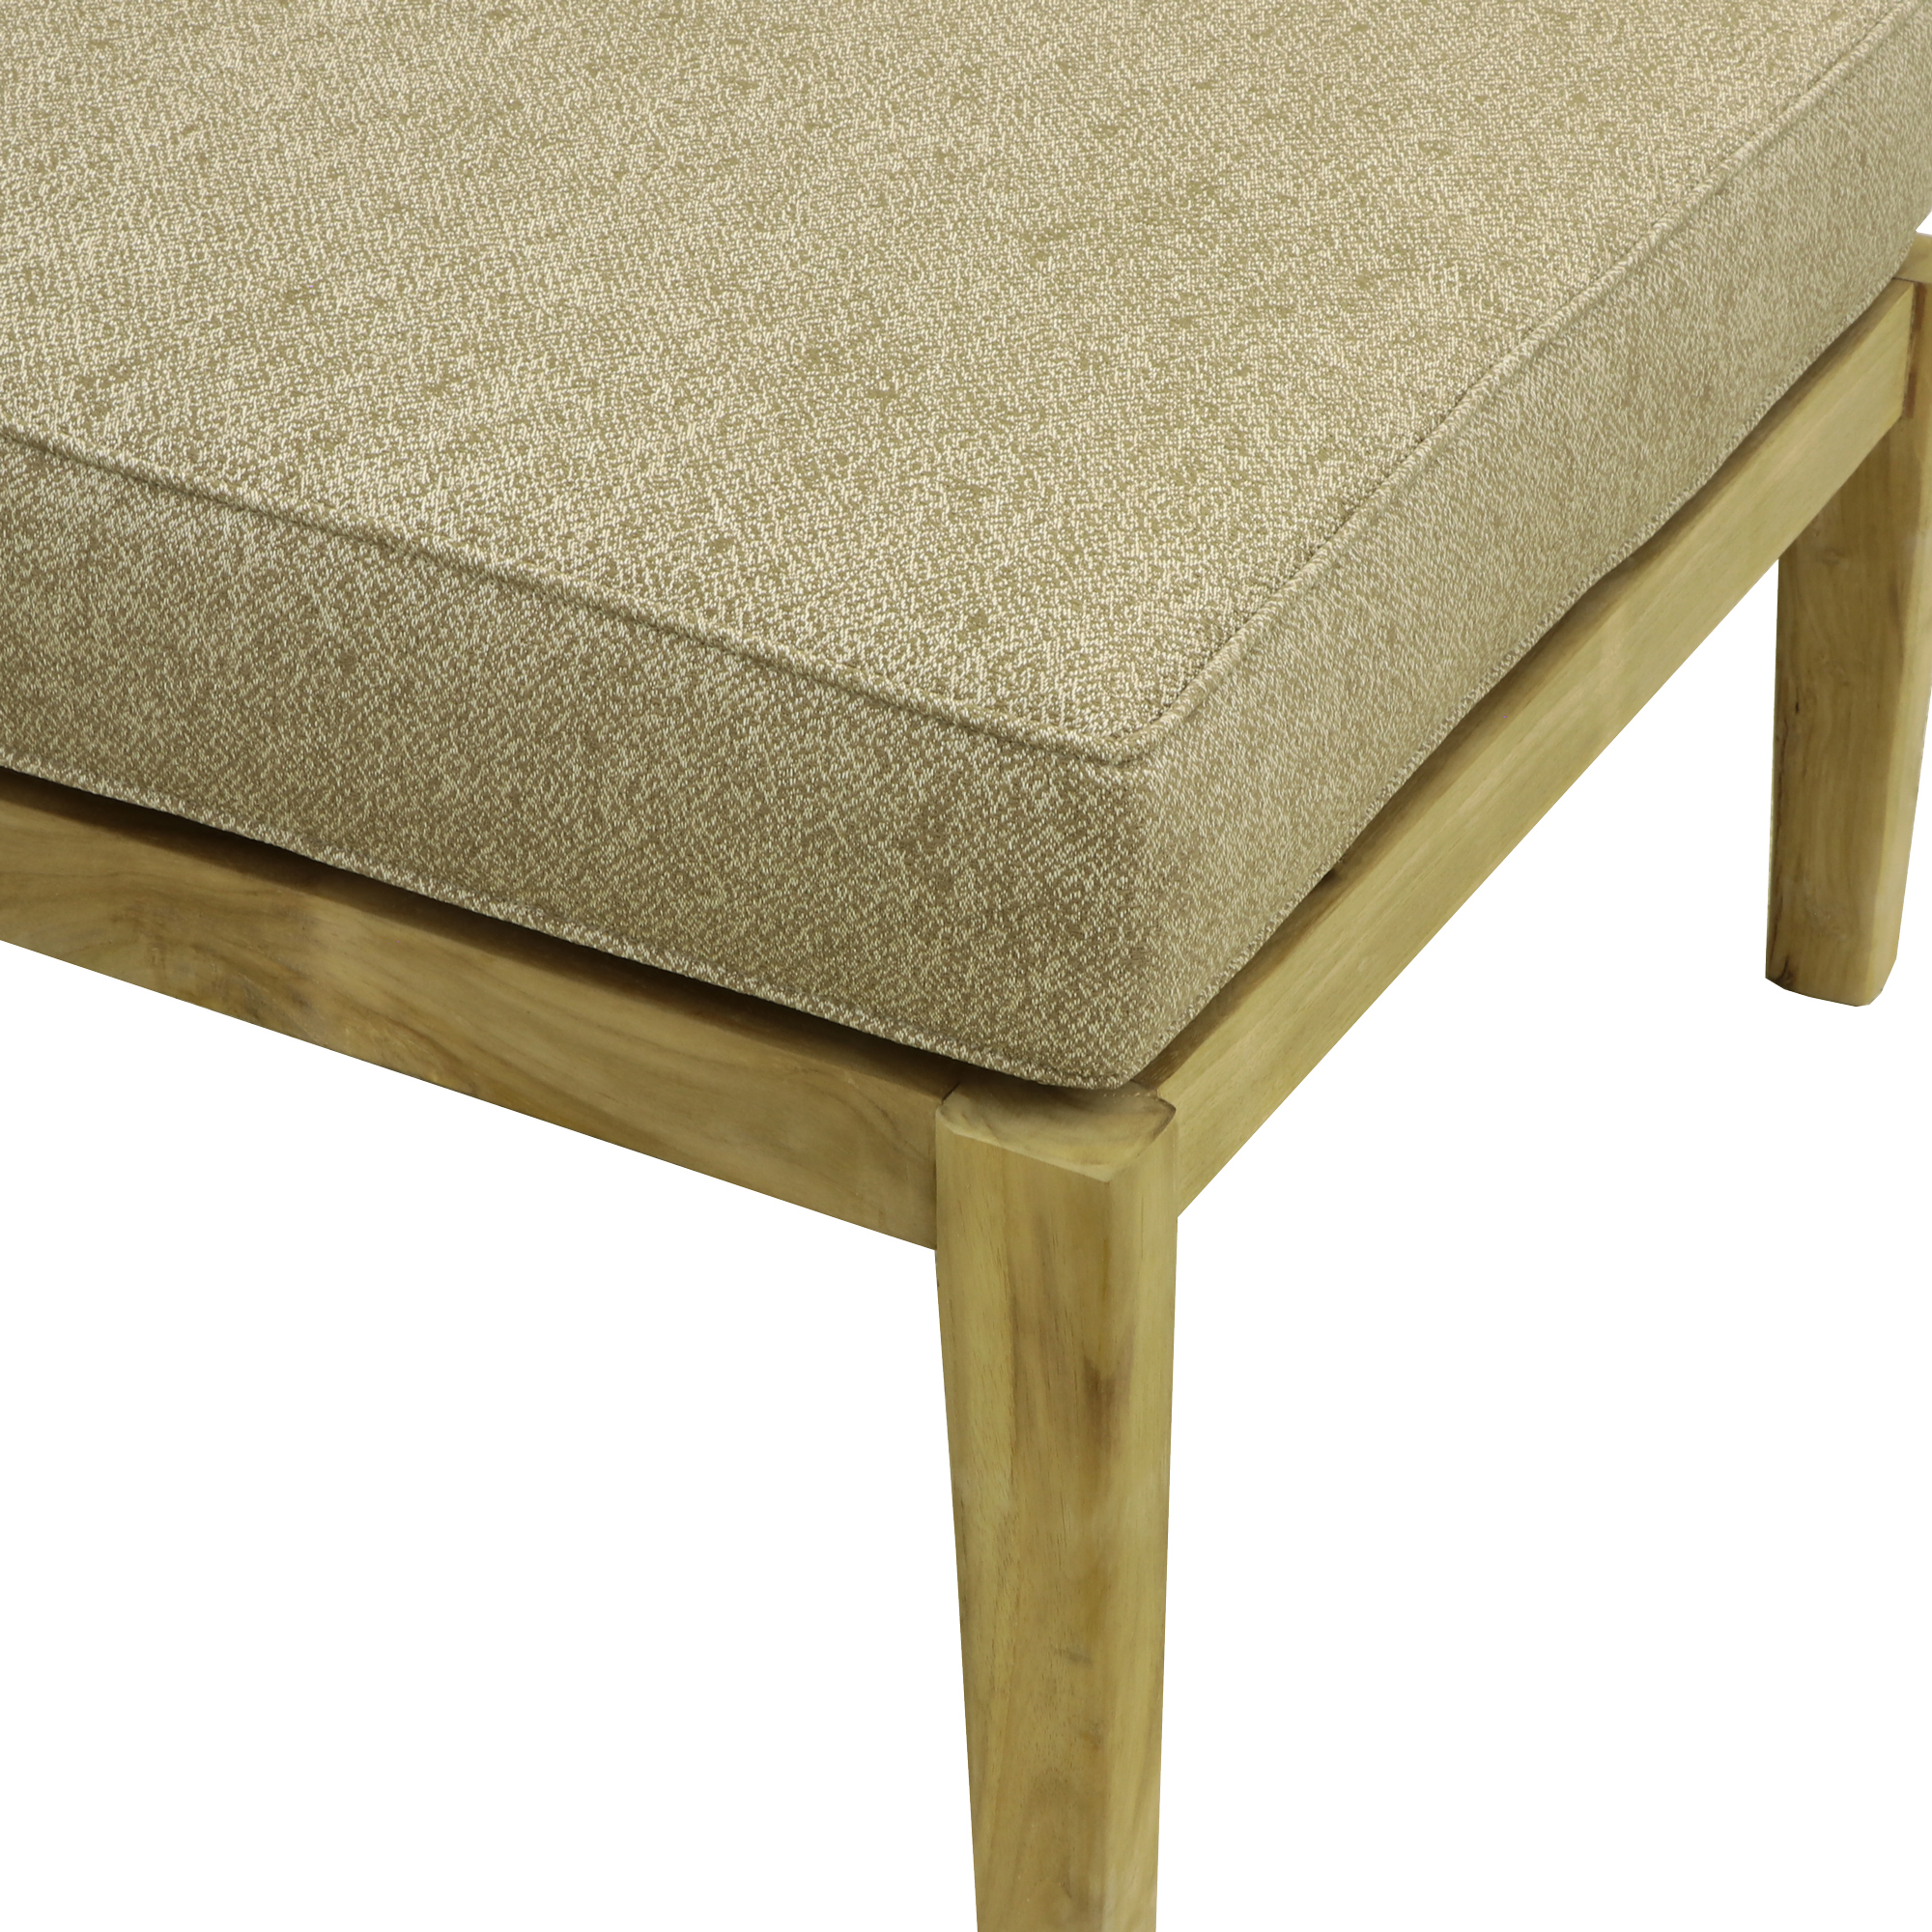 Комплект мебели Jepara Porto Cervo l 6 предметов, цвет коричневый, размер 82х210х85 - фото 11